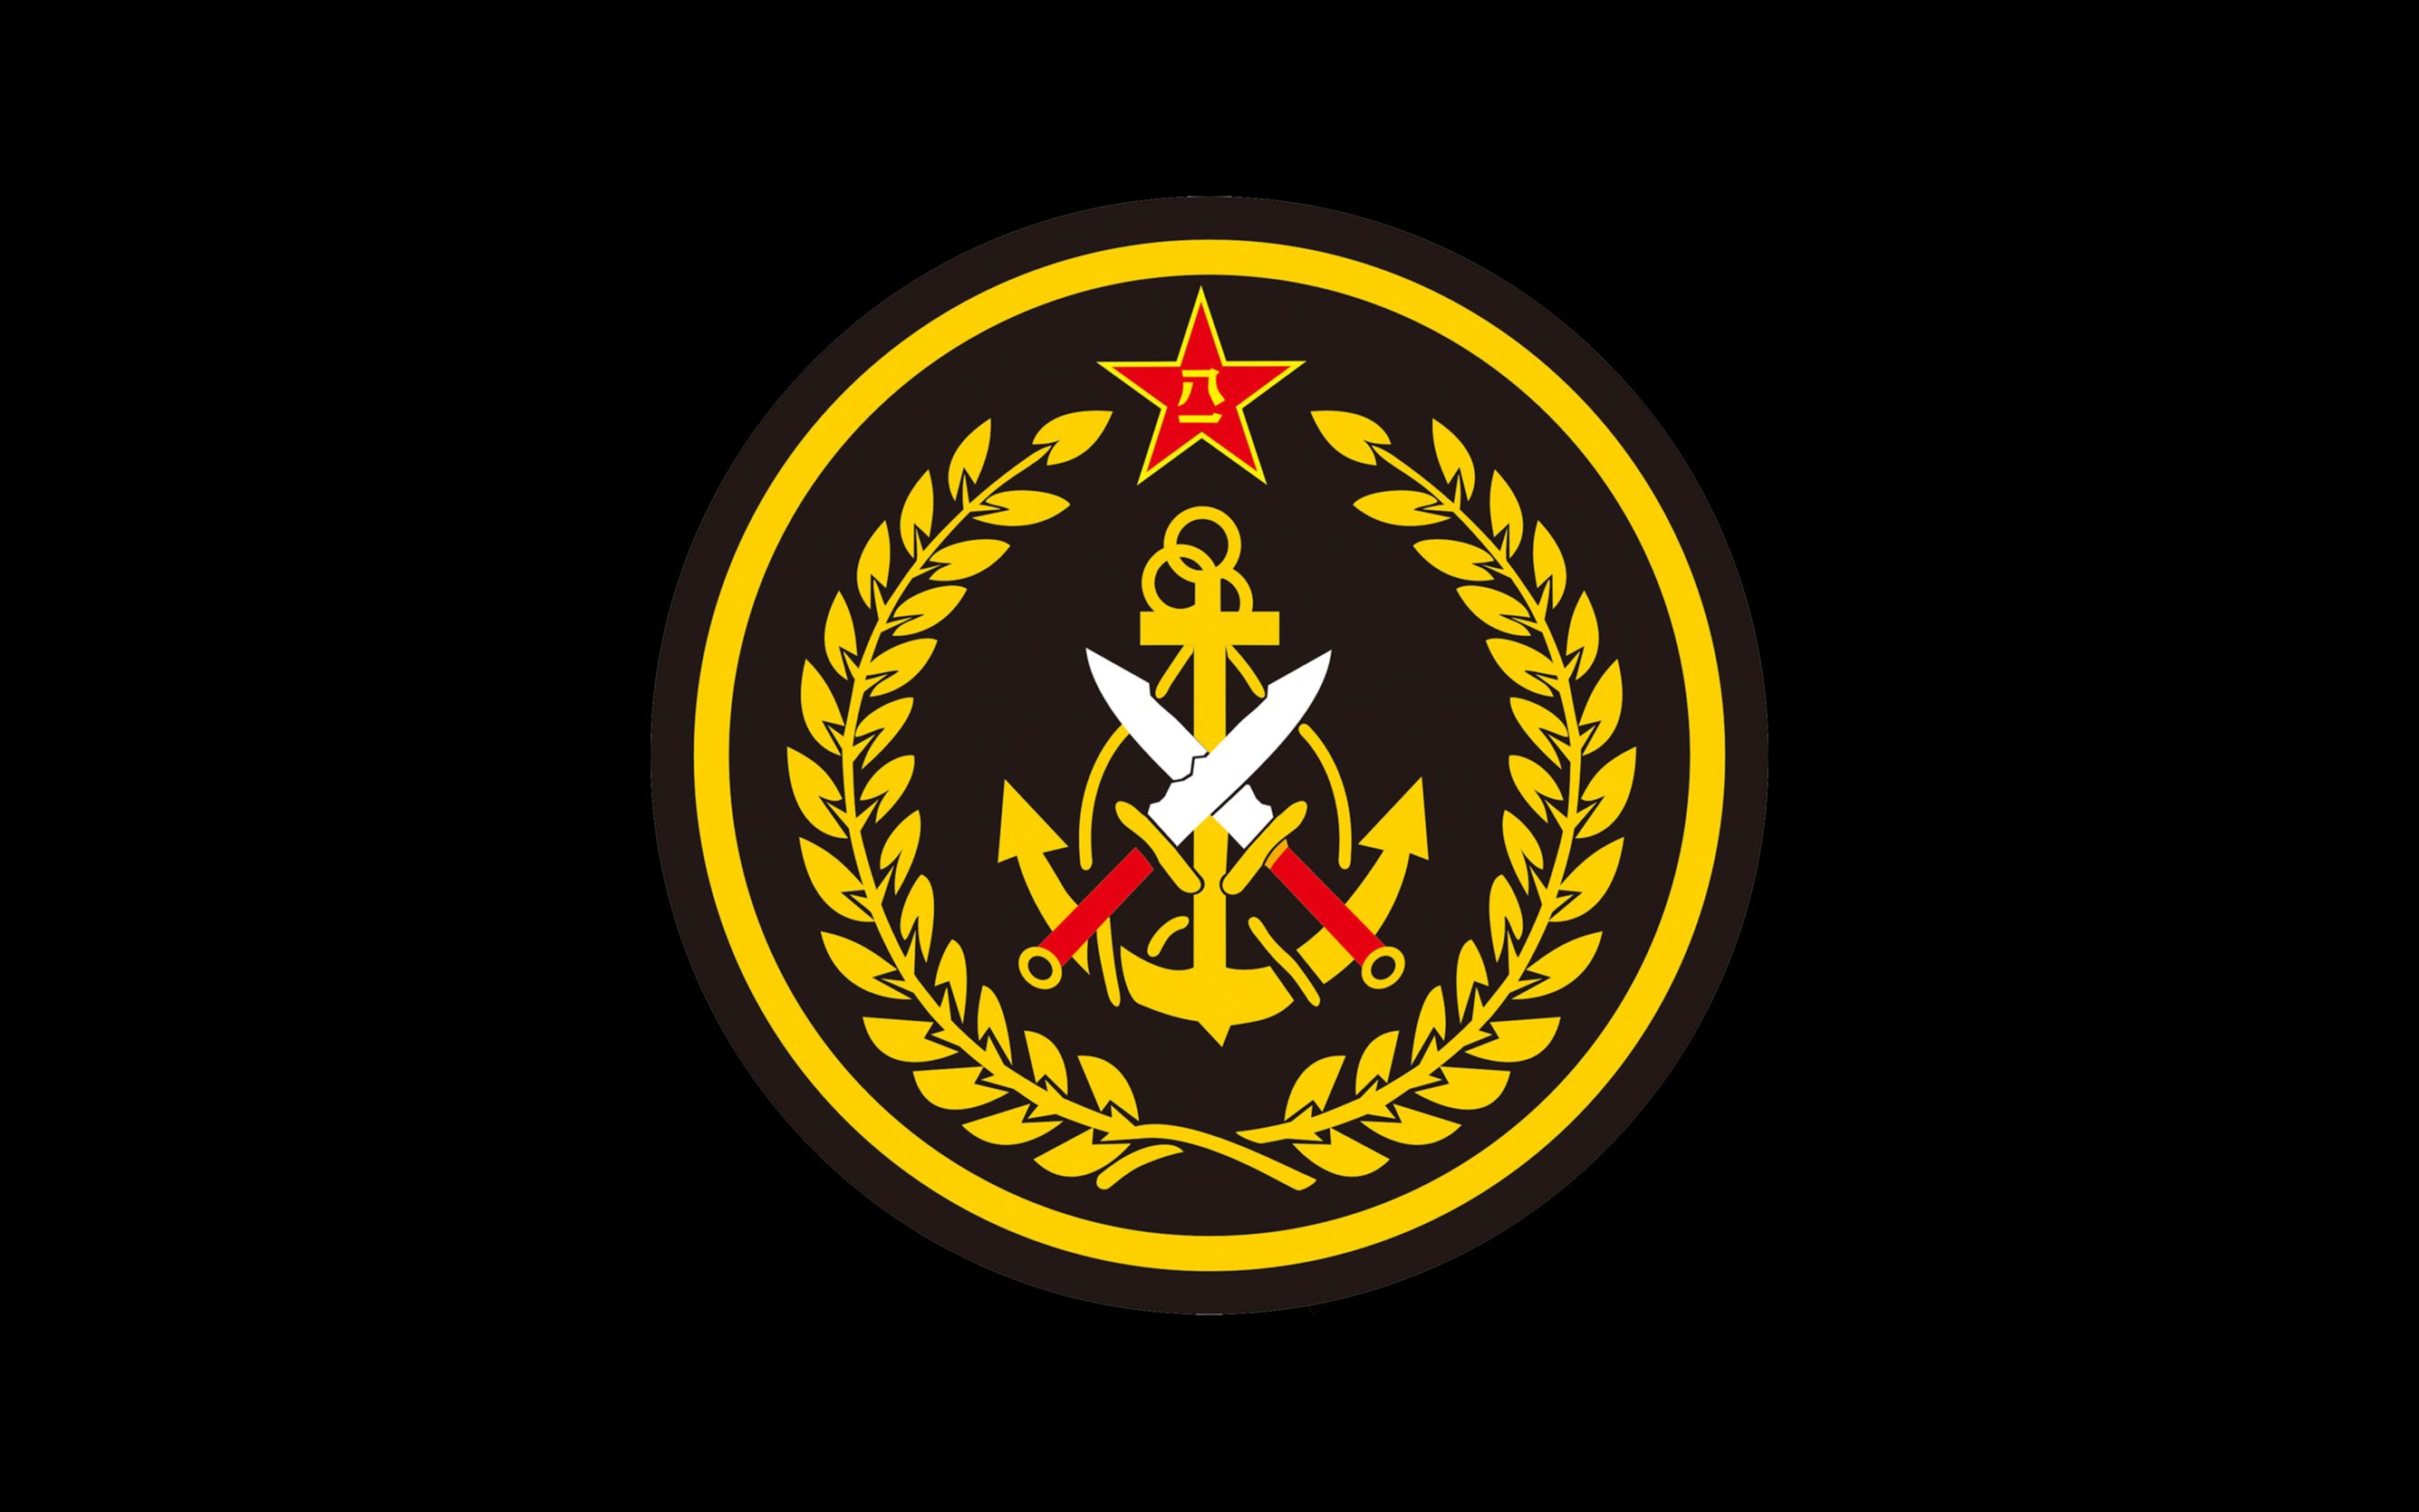 中国海军陆战队标志图片